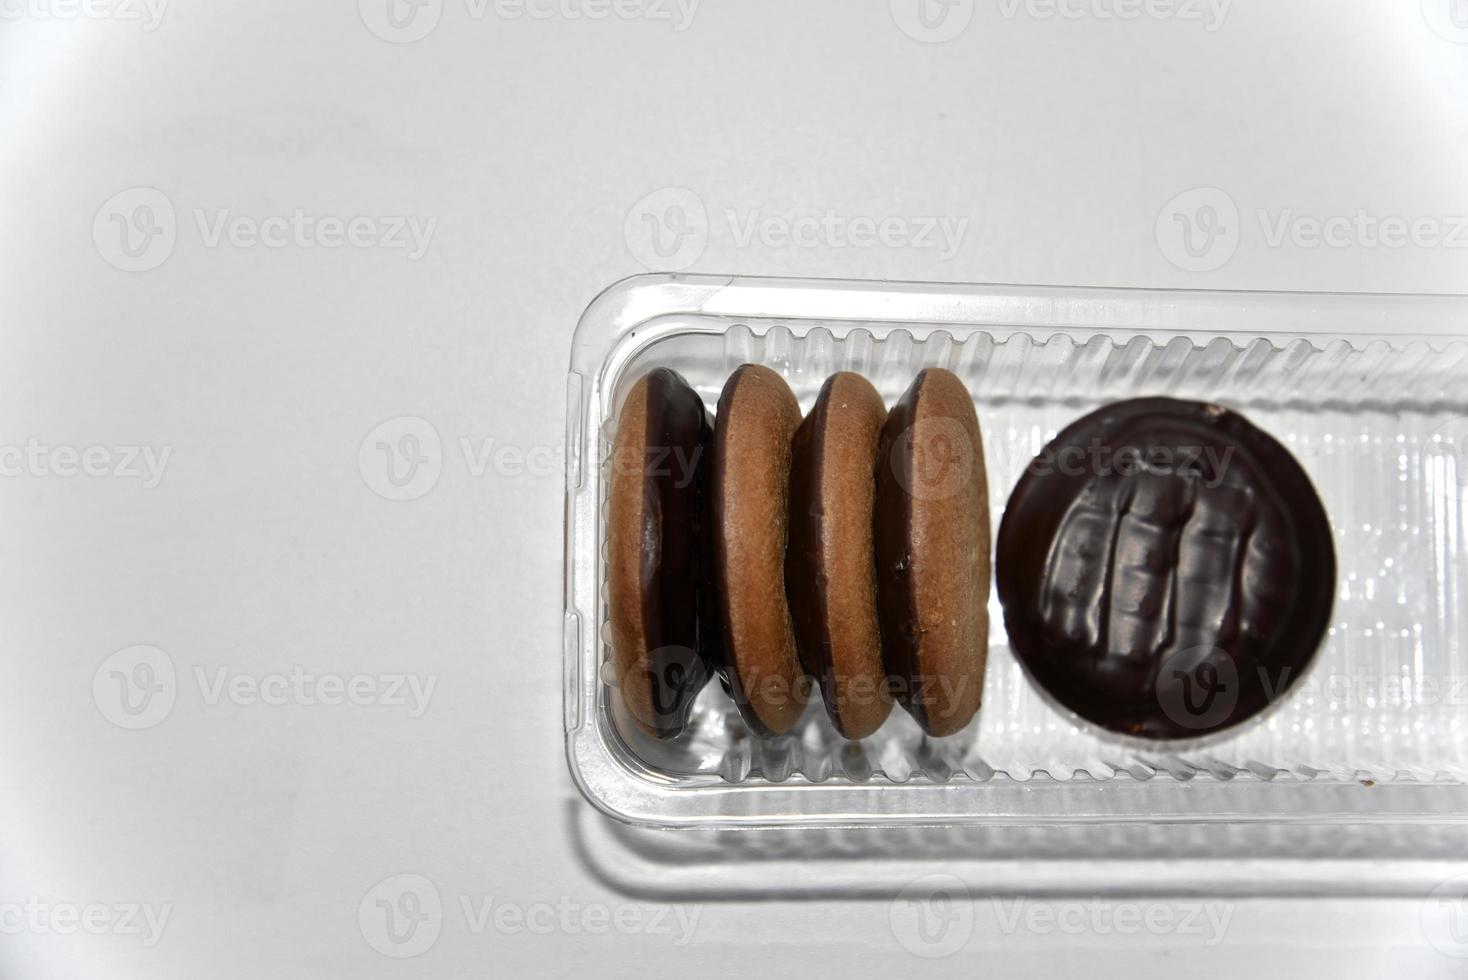 kakor täckta med choklad runda läckra på en vit bakgrund foto